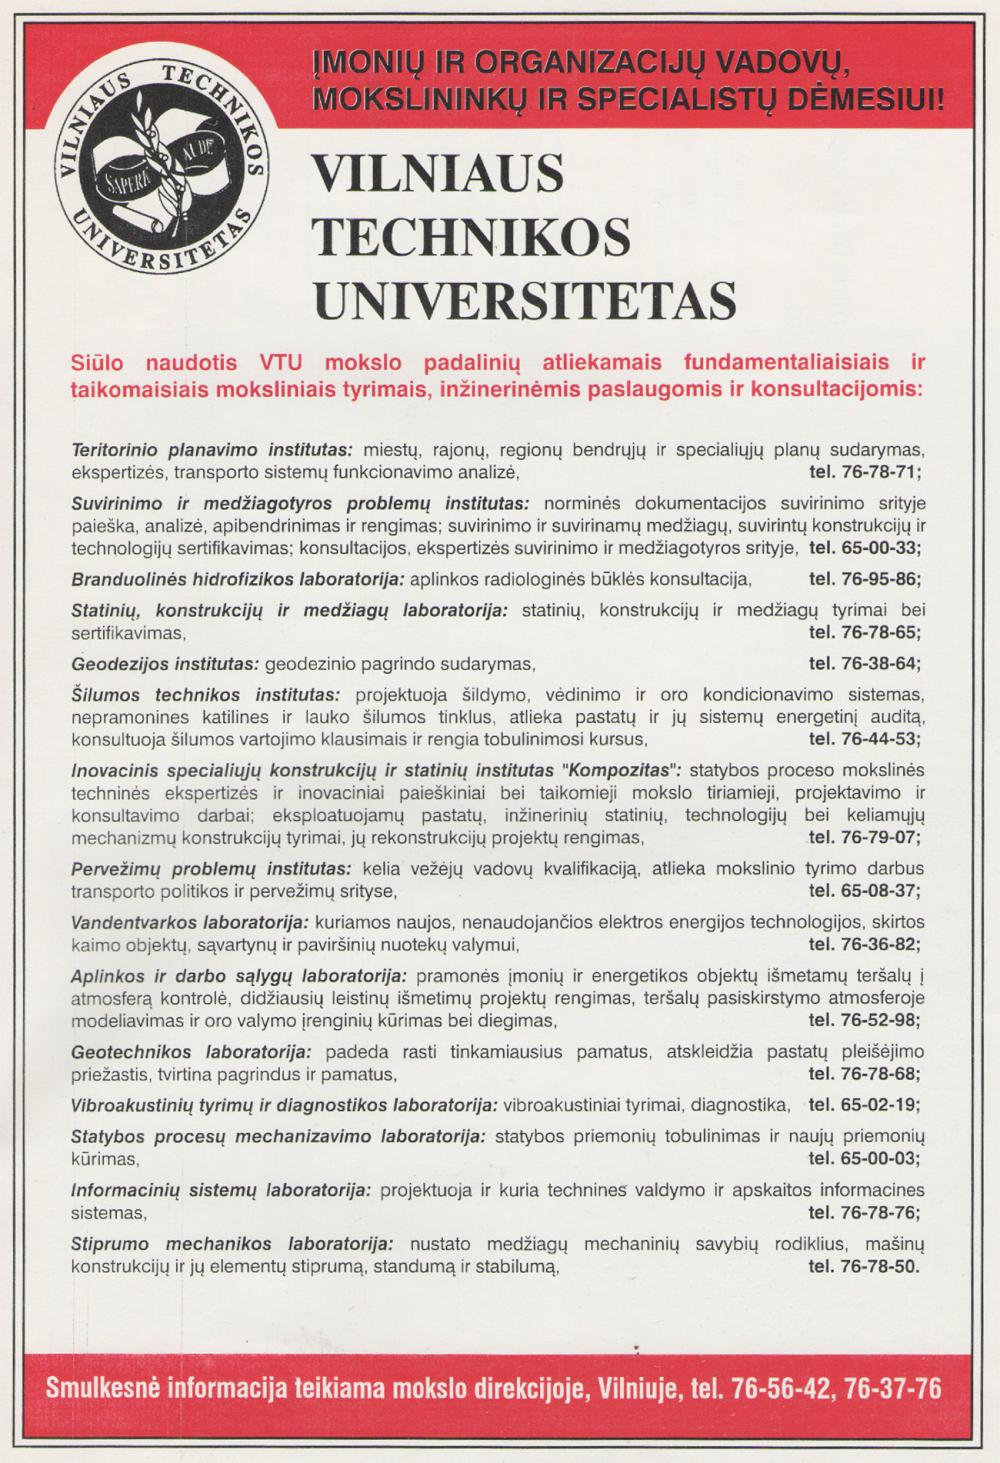 Vilniaus technikos universitetas / Tyrimai, paslaugos, konsultacijos